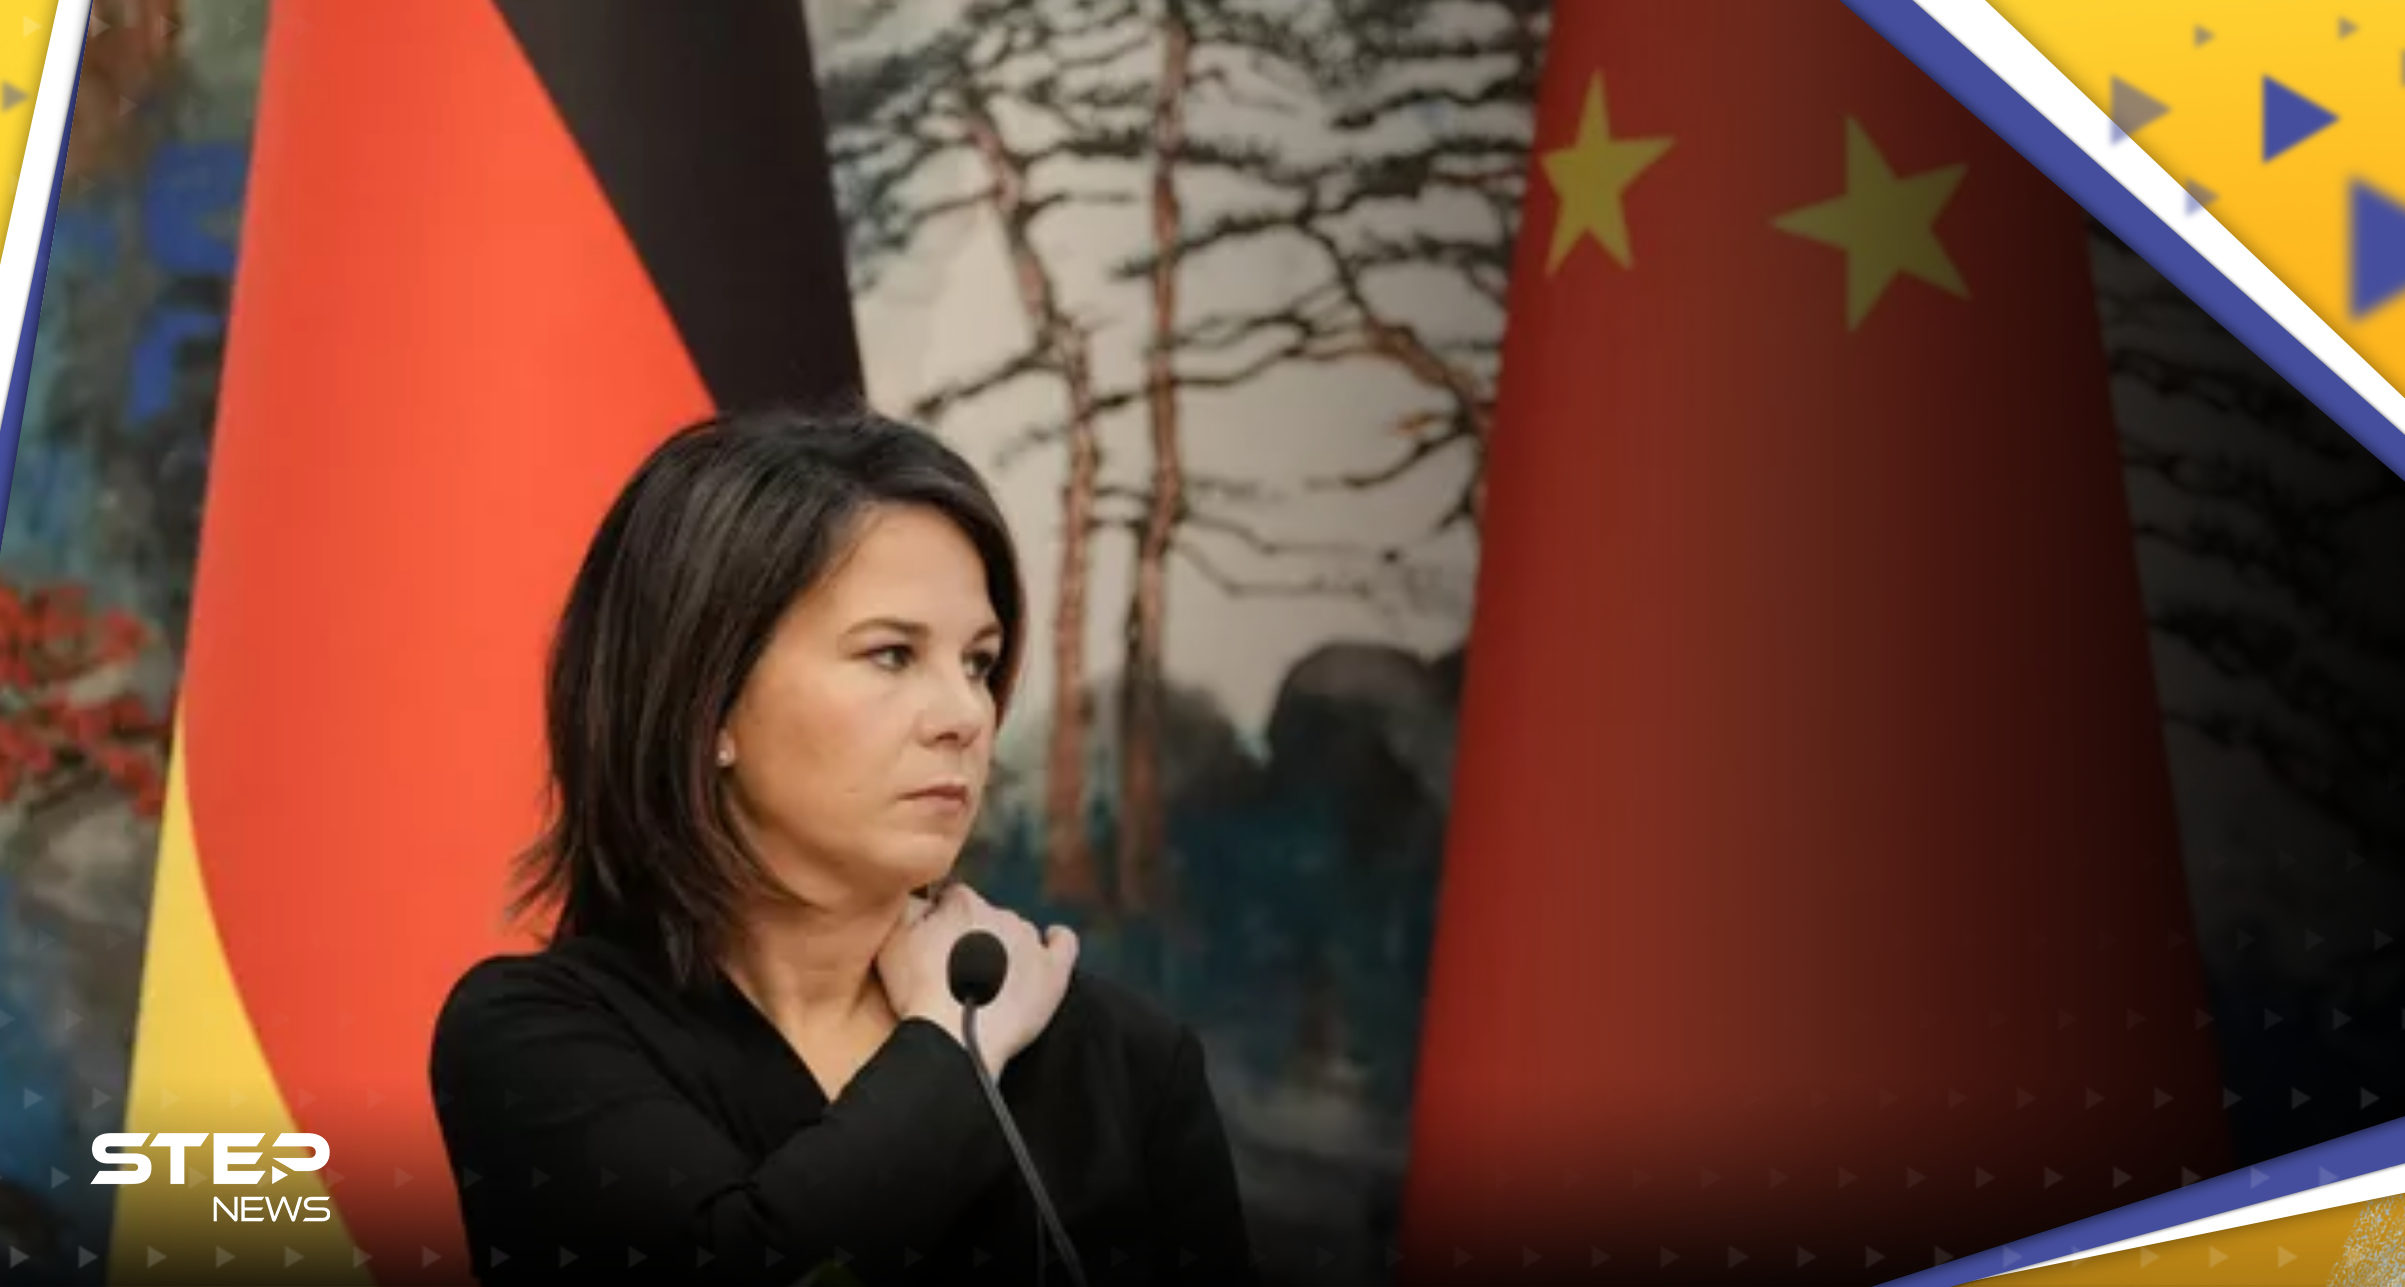 بعد حديث عن "سيناريو مرعب".. الصين ترد على وزيرة ألمانية وتحذّر الأوروبيين 